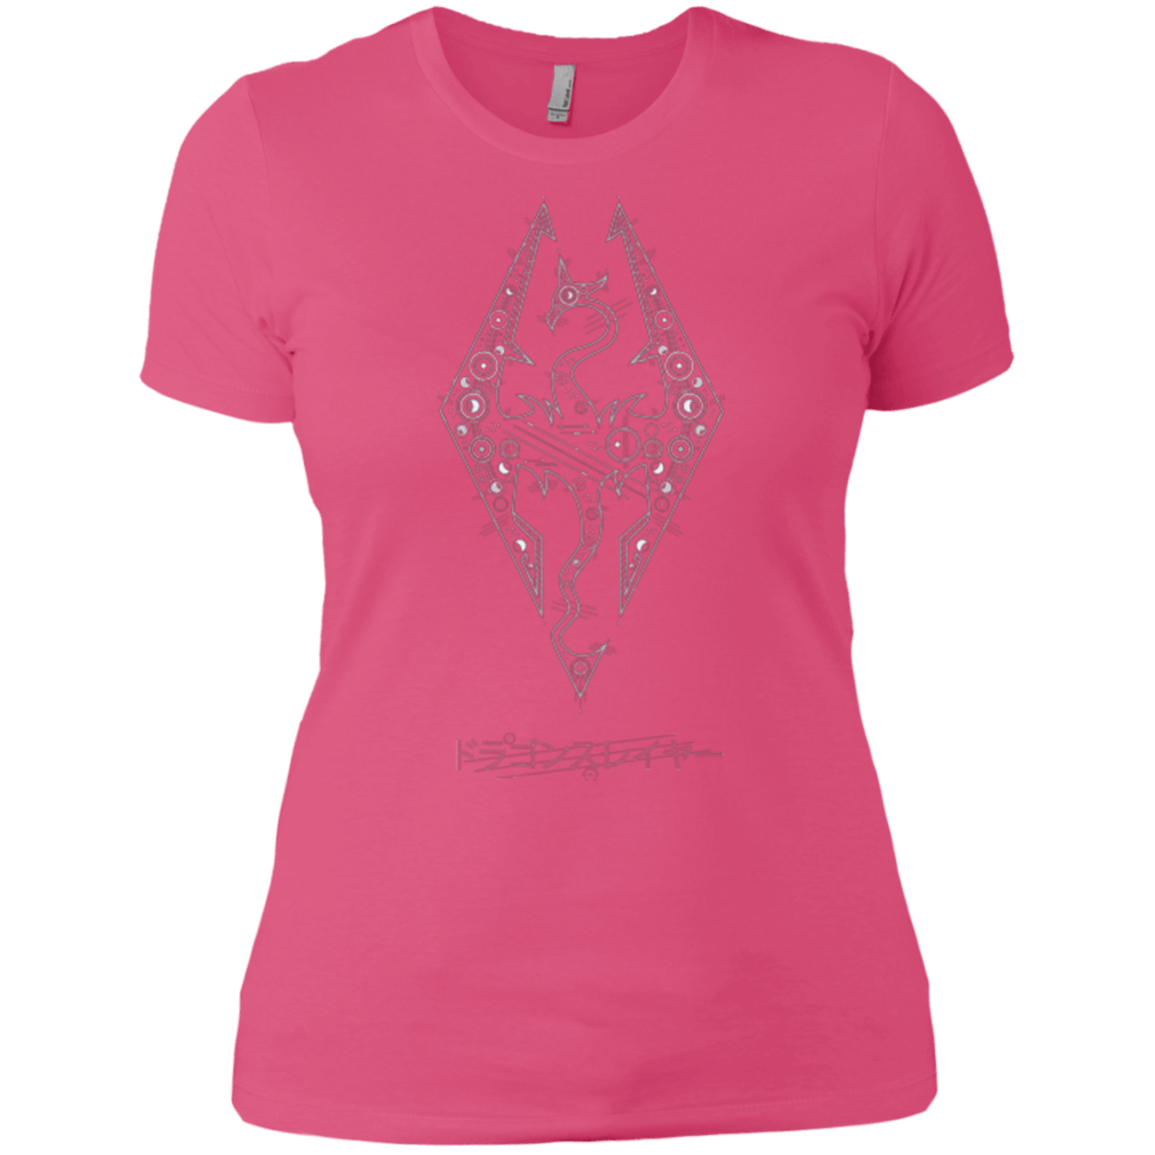 Tech Draco Women's Premium T-Shirt